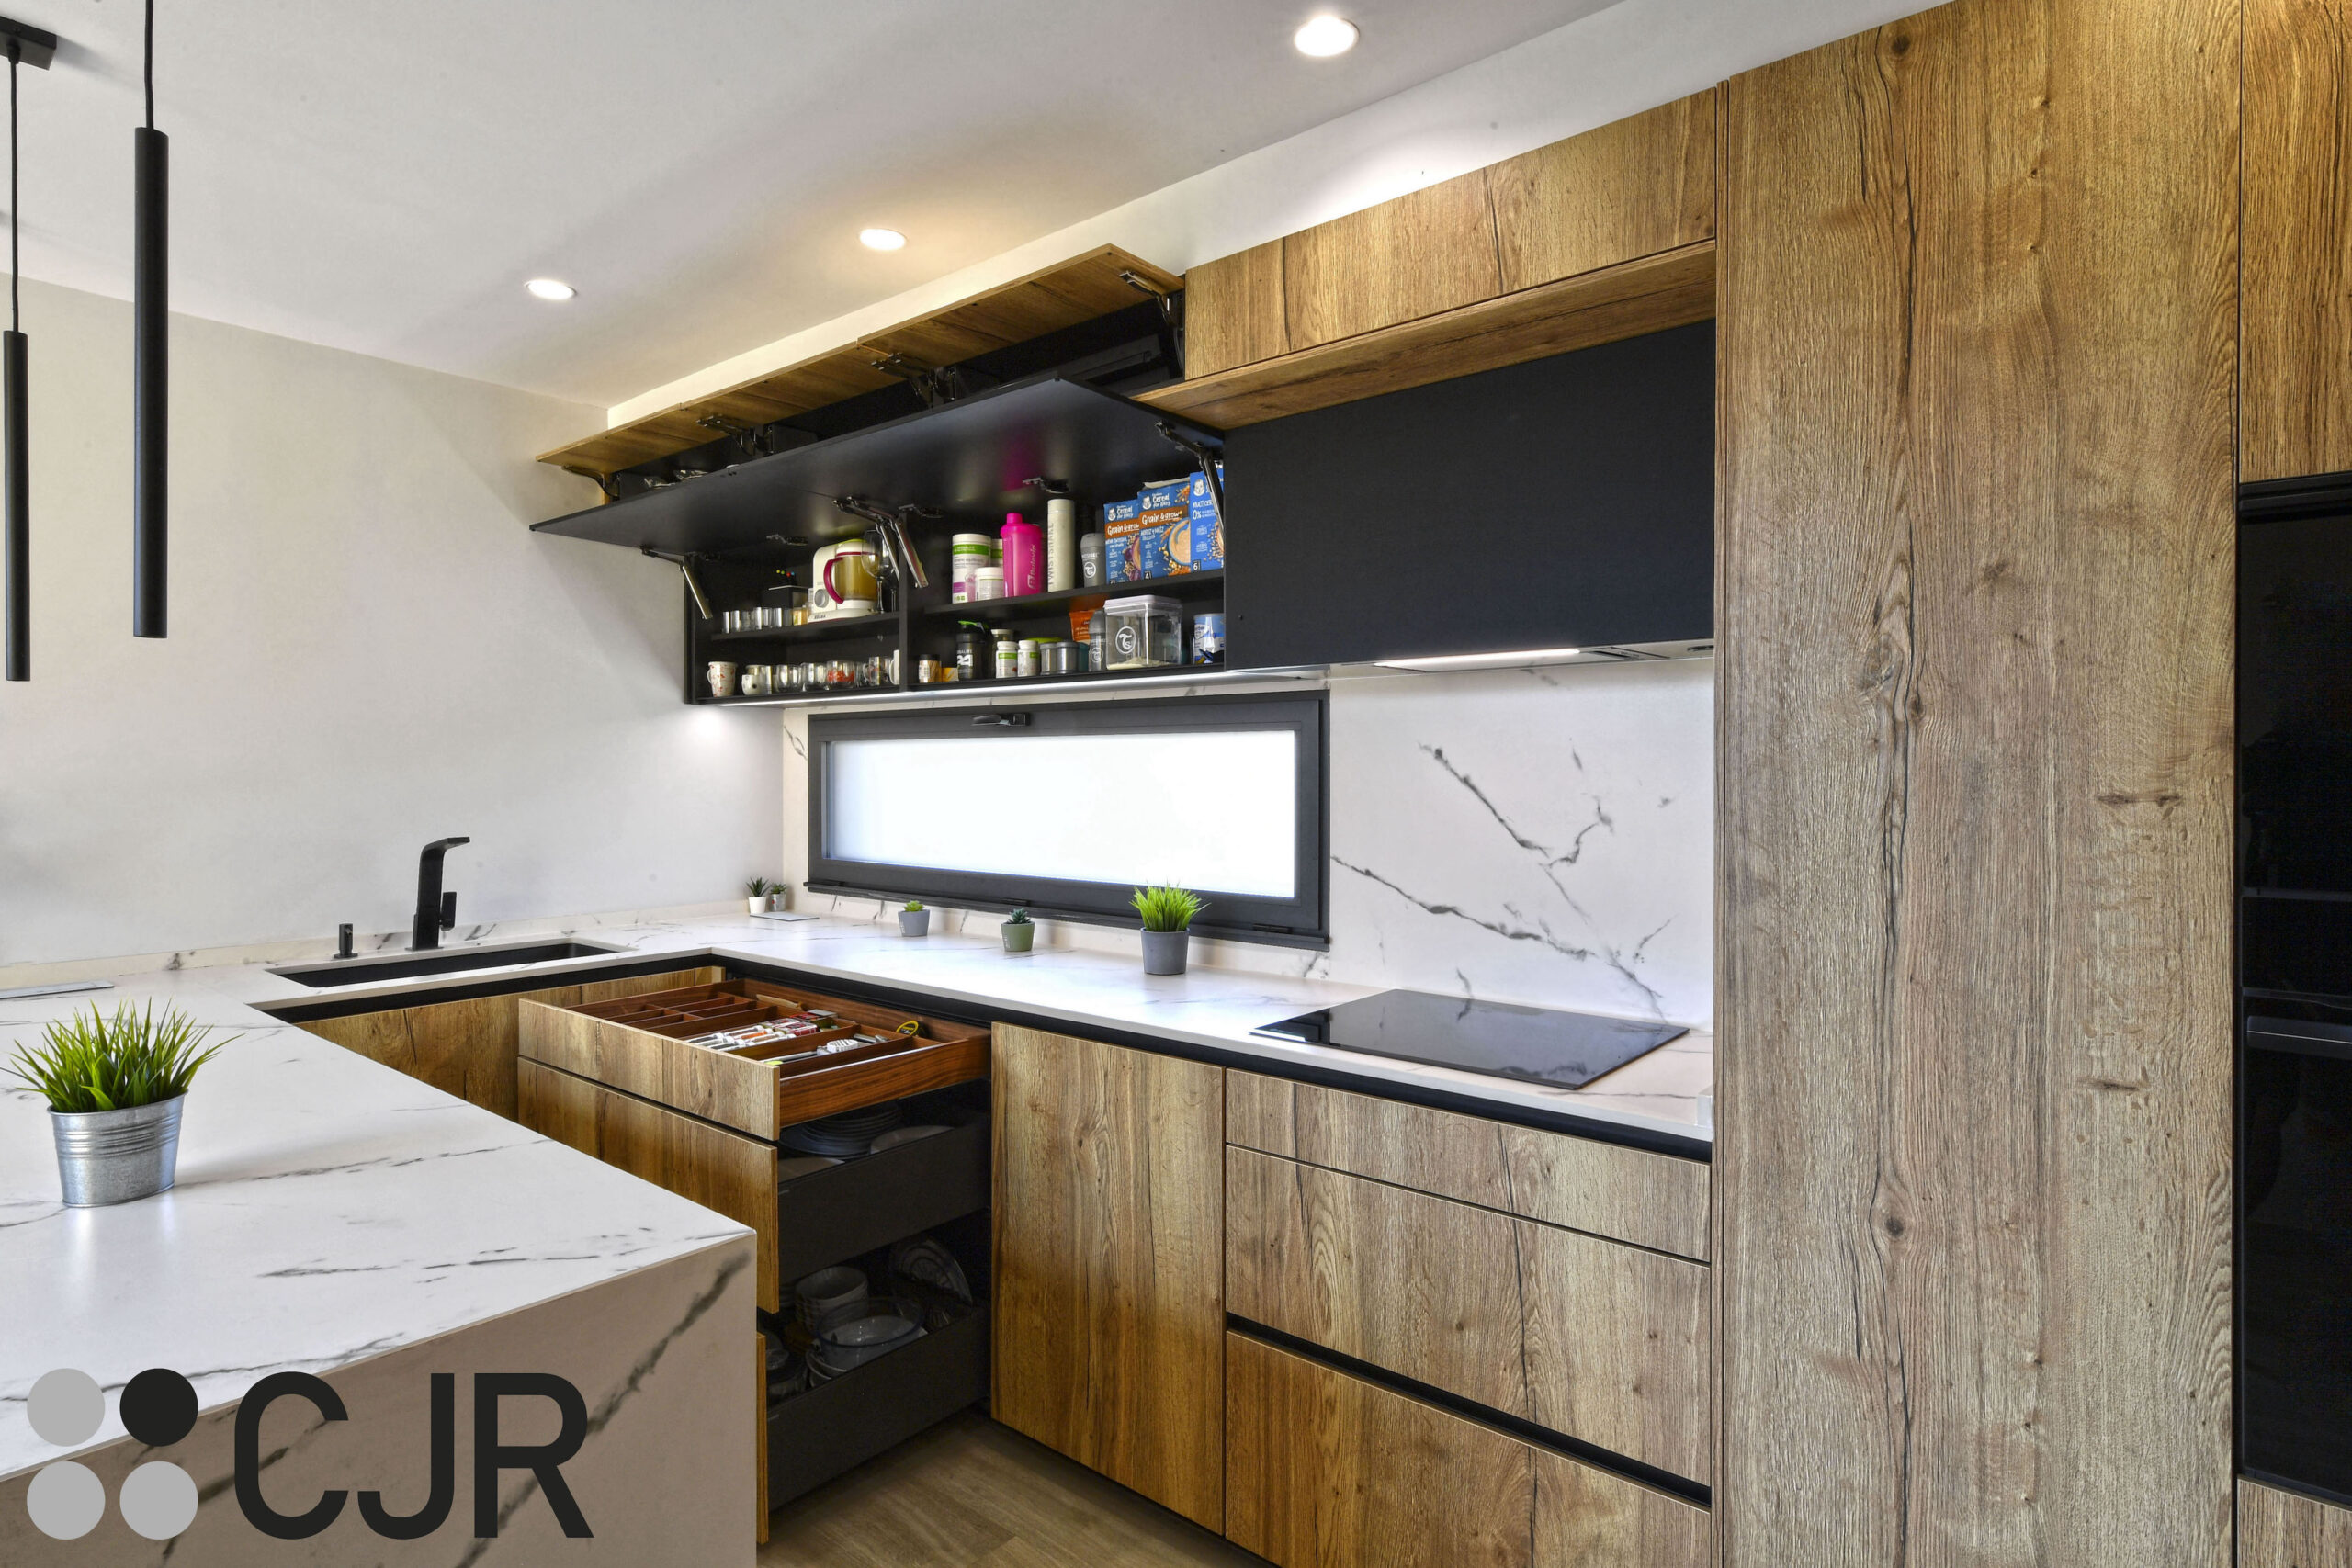 muebles de cocina madera y negra en u moderna cocinas cjr